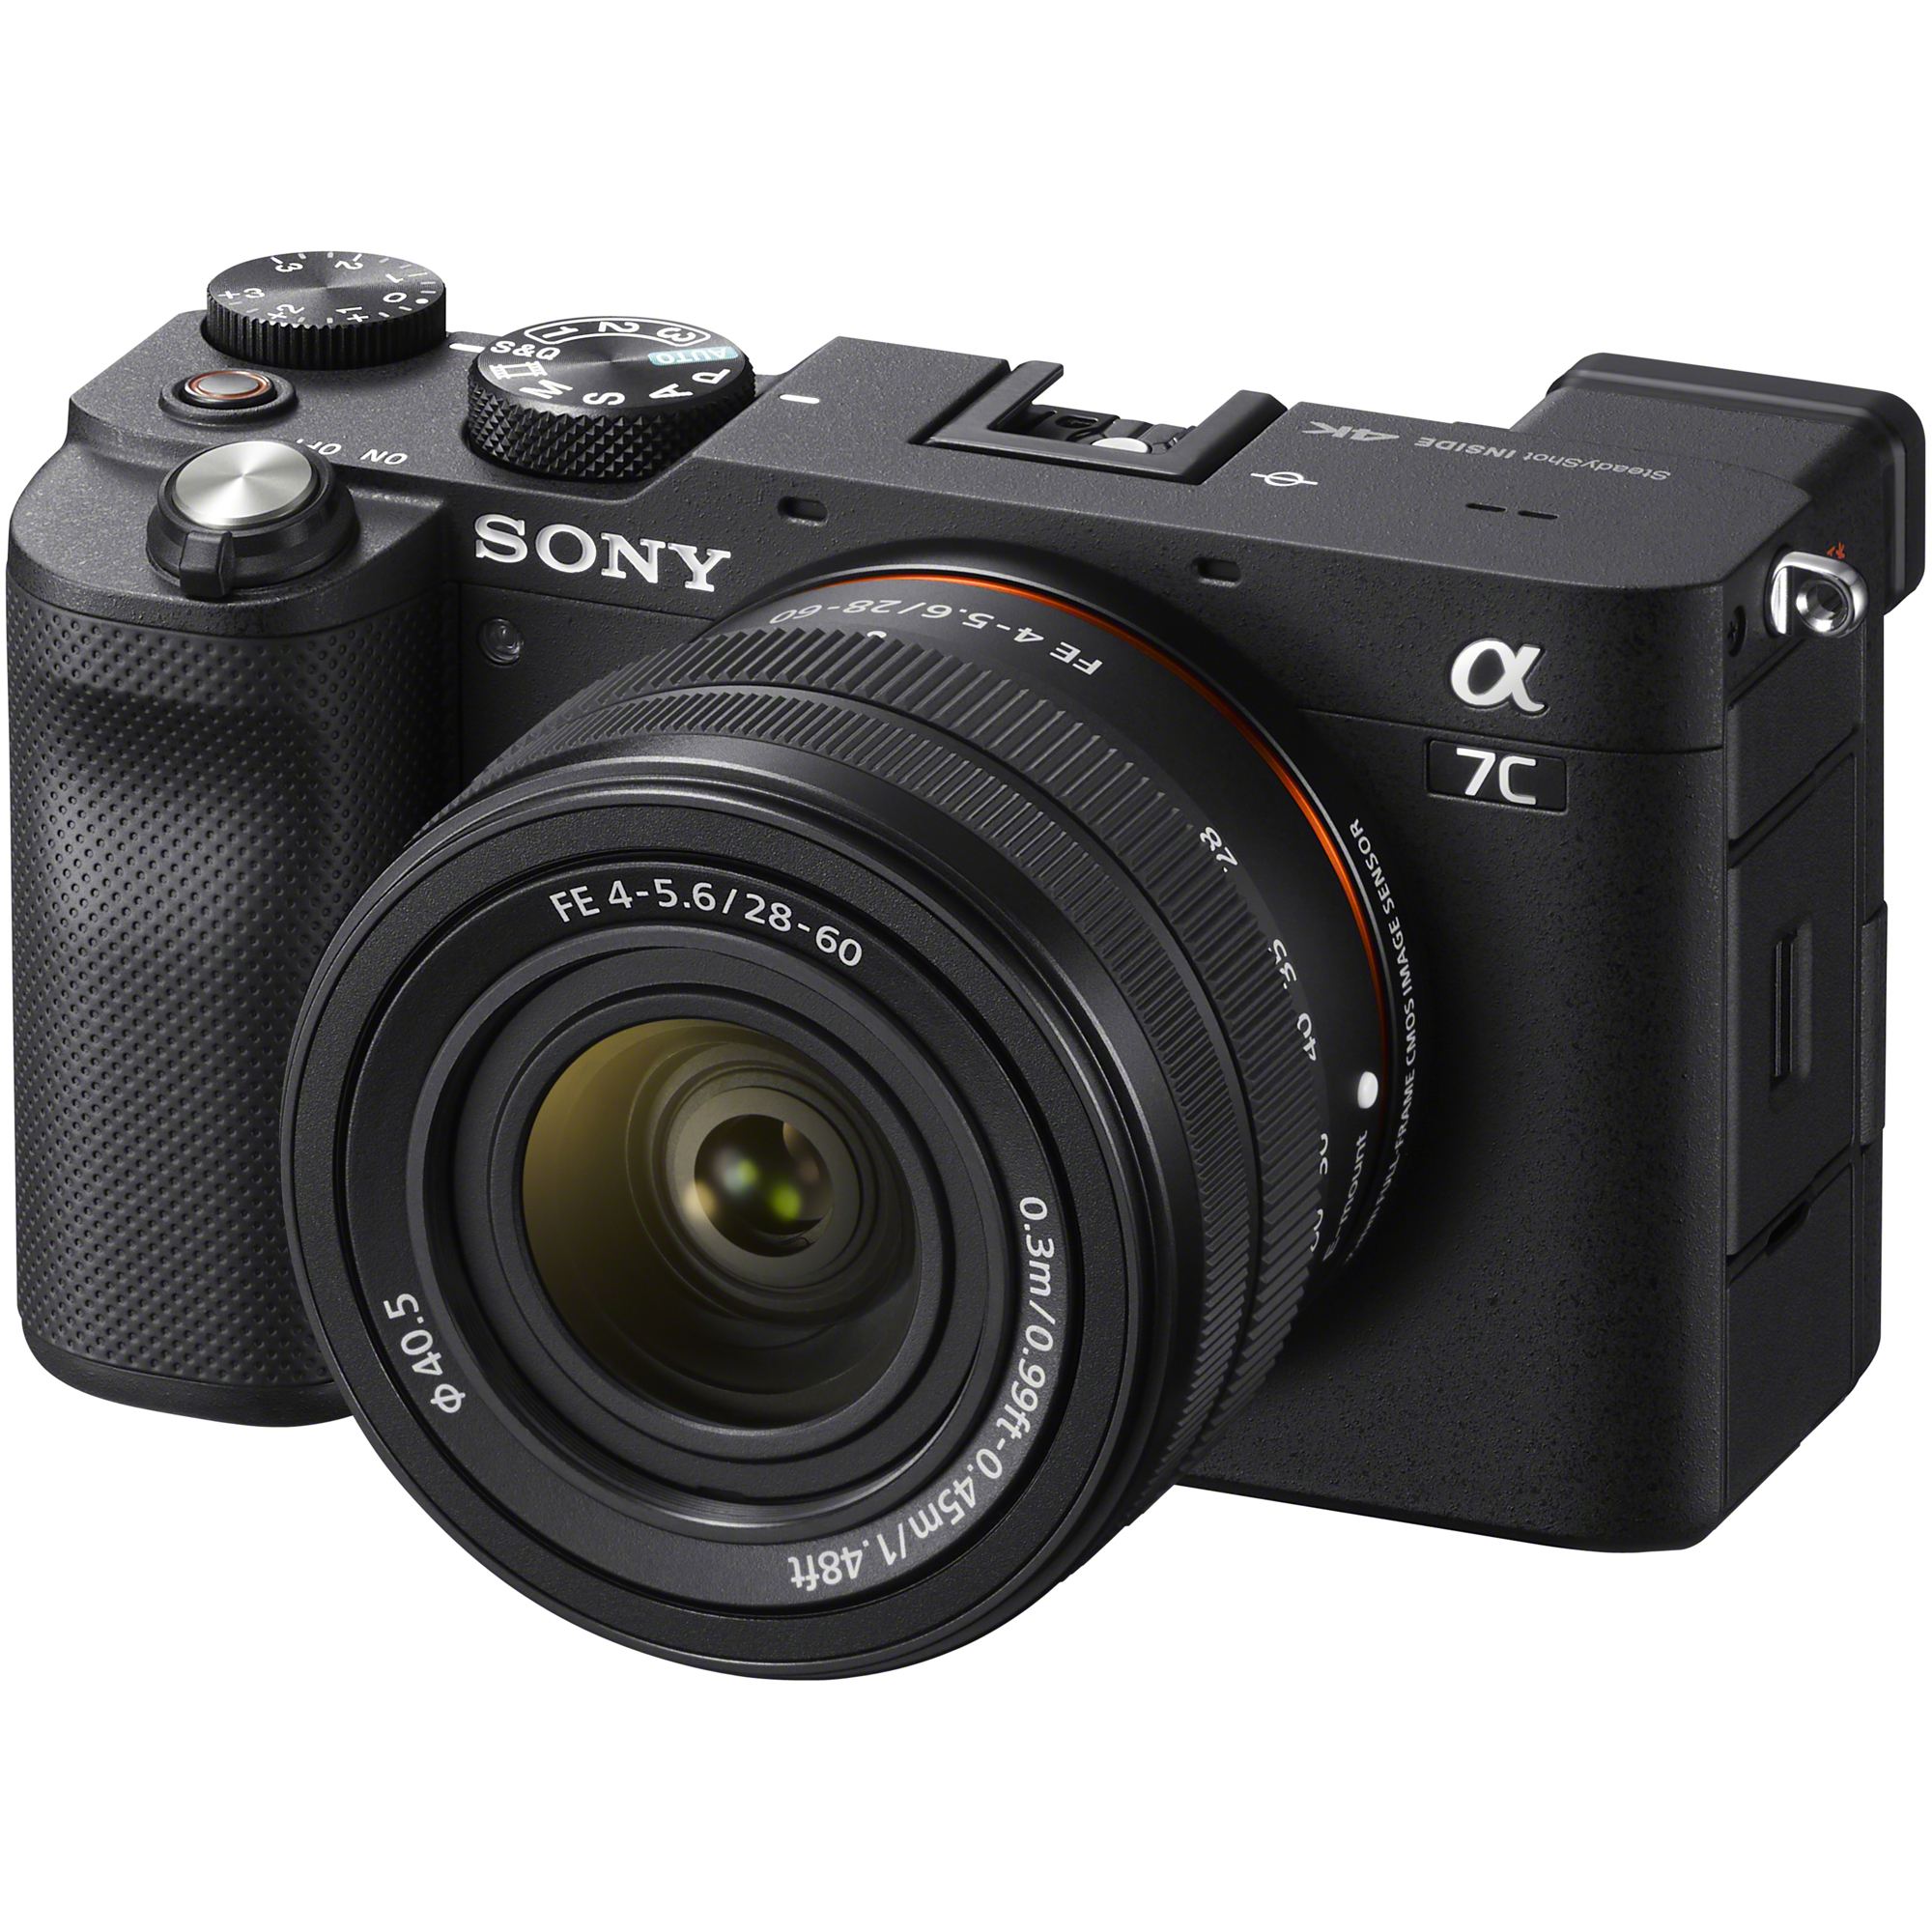 Sony a7C Mirrorless Full Frame Camera 2 Lens Kit 28-60mm + 50mm F1 